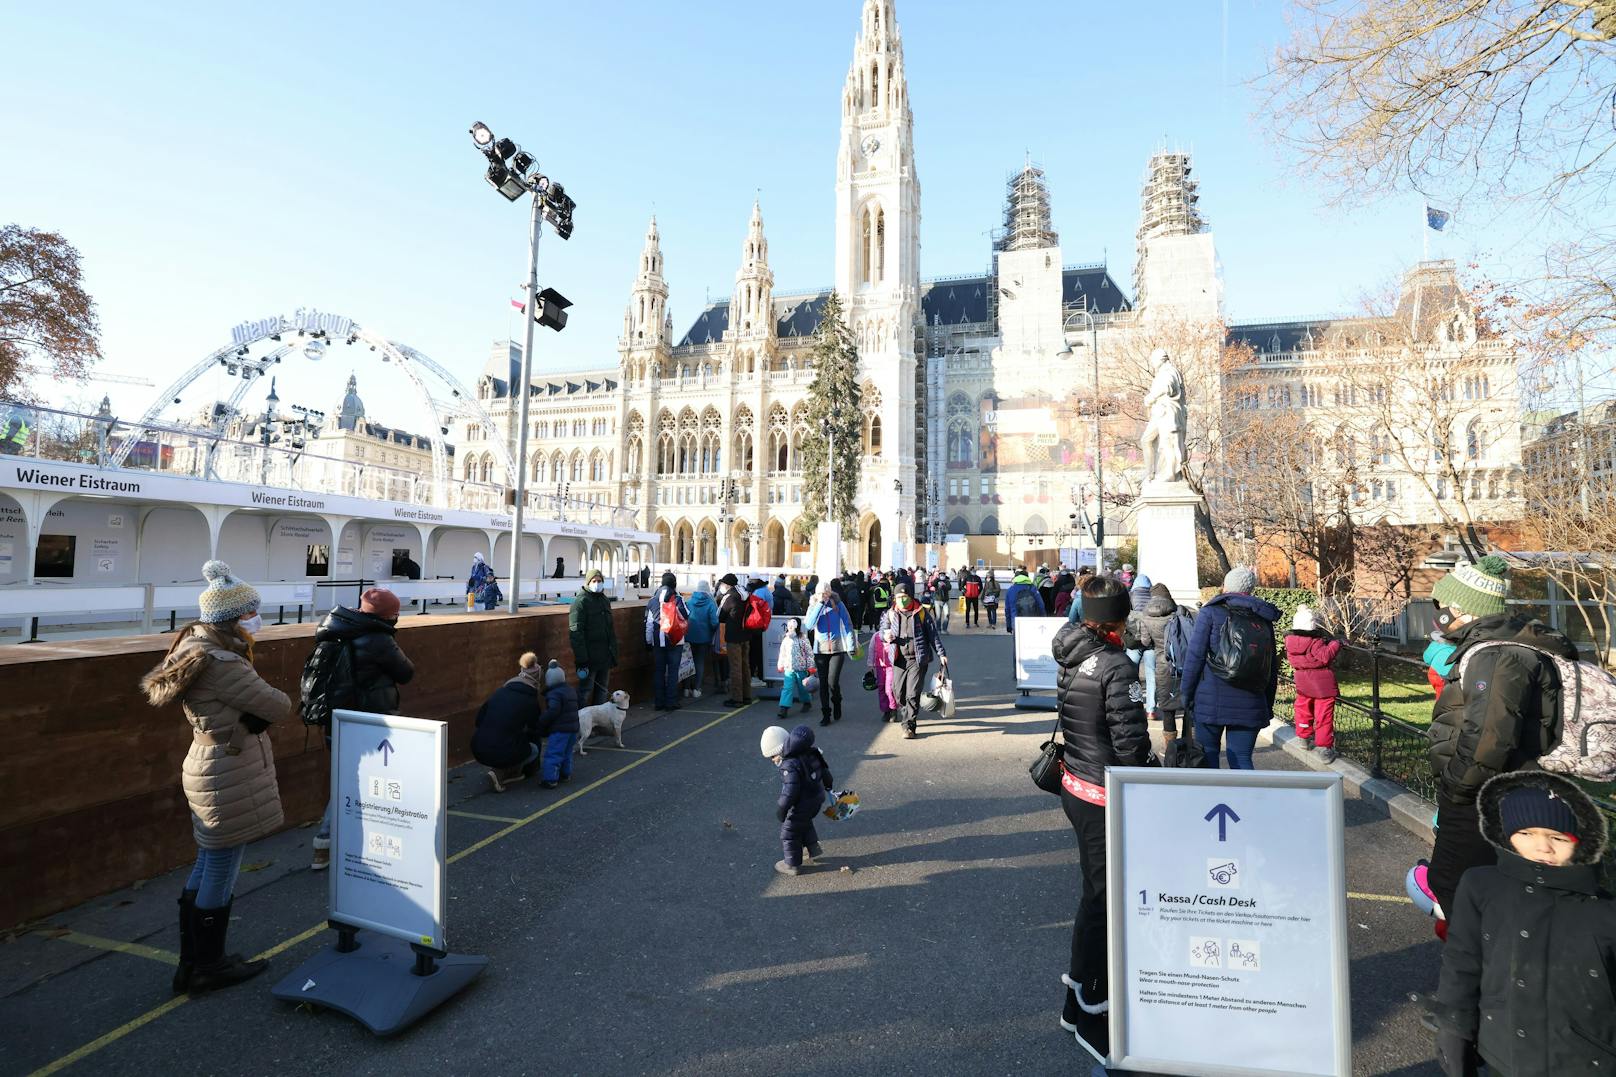 Bei herrlichem Sonnenschein wollten viele am Wiener Rathausplatz ihre Runden am Eis drehen. Wartezeiten bis weit über eine Stunde musste man dafür aber in Kauf nehmen.